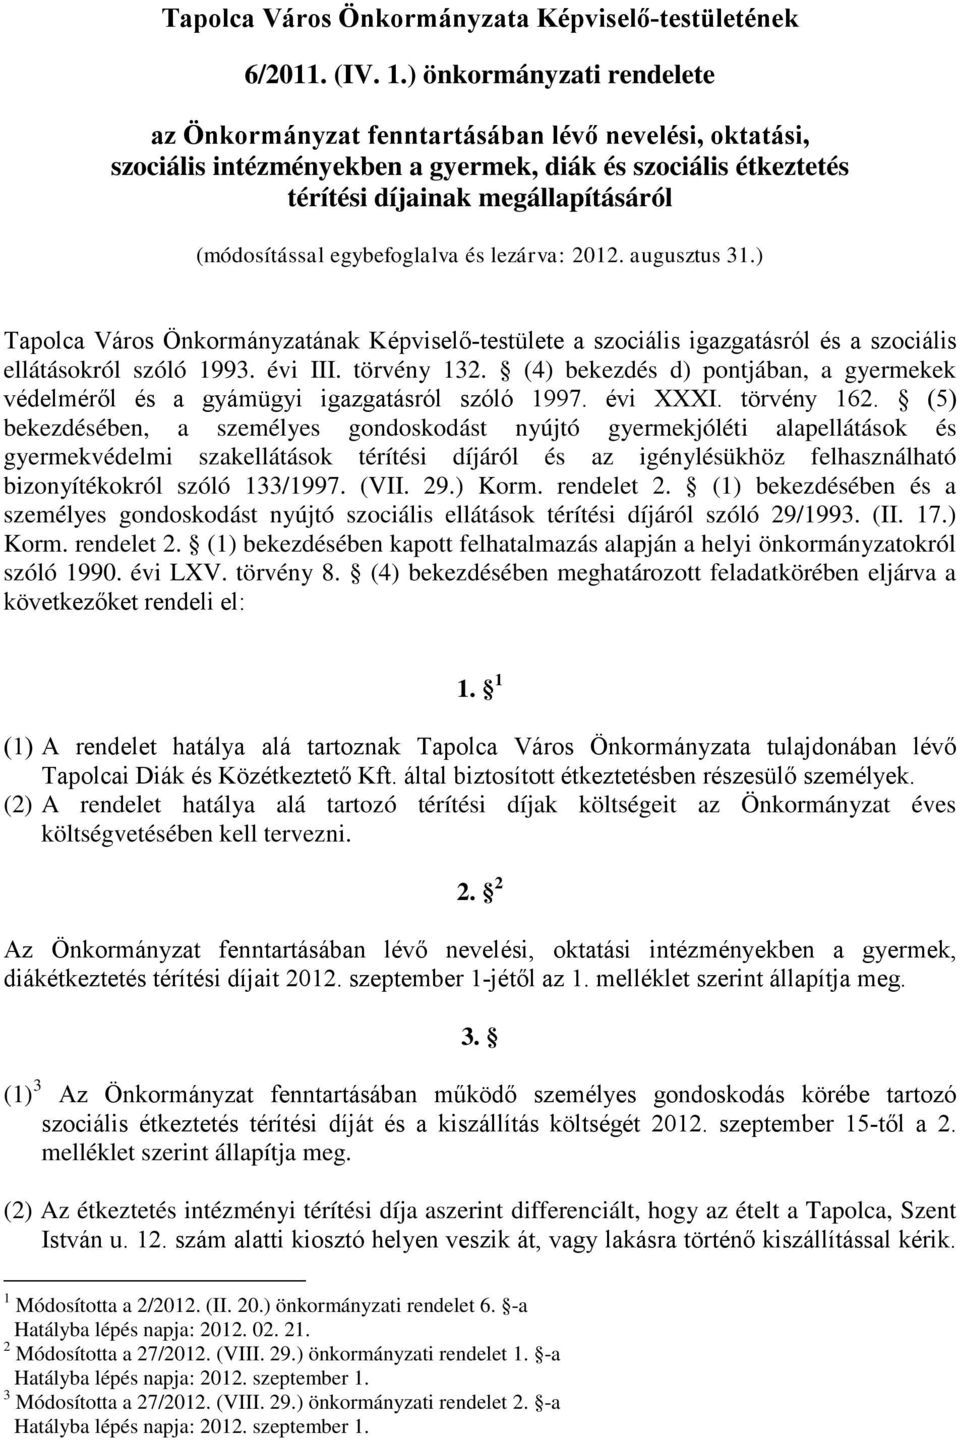 egybefoglalva és lezárva: 2012. augusztus 31.) Tapolca Város Önkormányzatának Képviselő-testülete a szociális igazgatásról és a szociális ellátásokról szóló 1993. évi III. törvény 132.